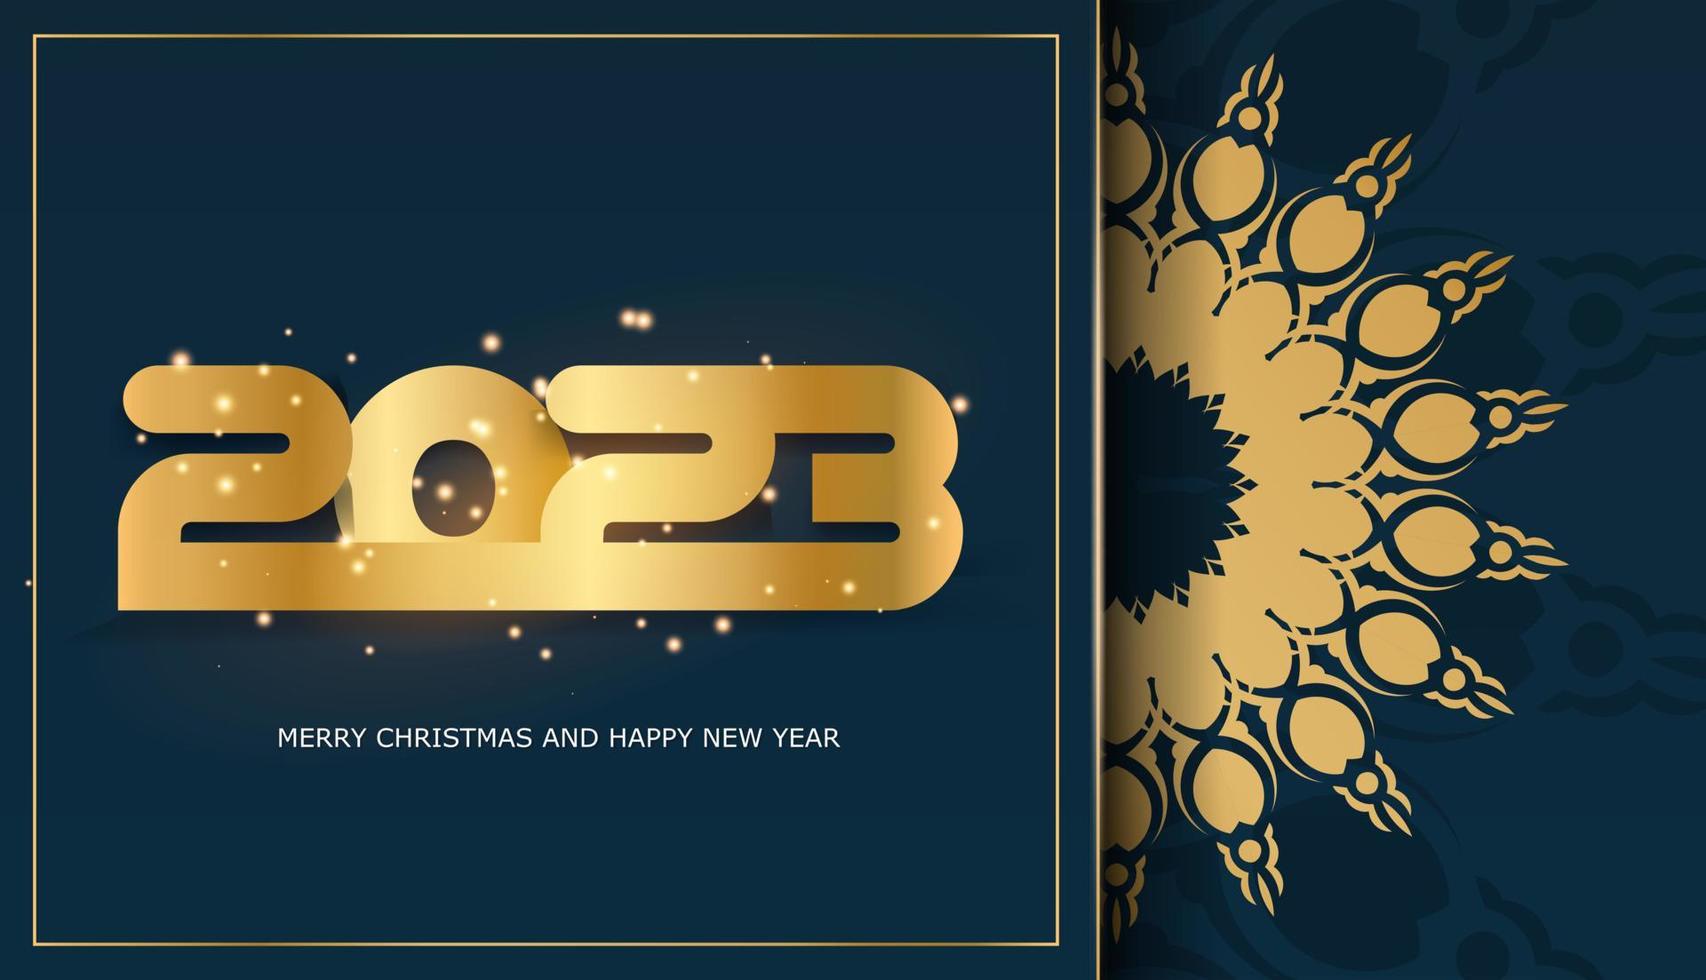 cartaz de saudação de feliz ano novo de 2023. cor azul e ouro. vetor